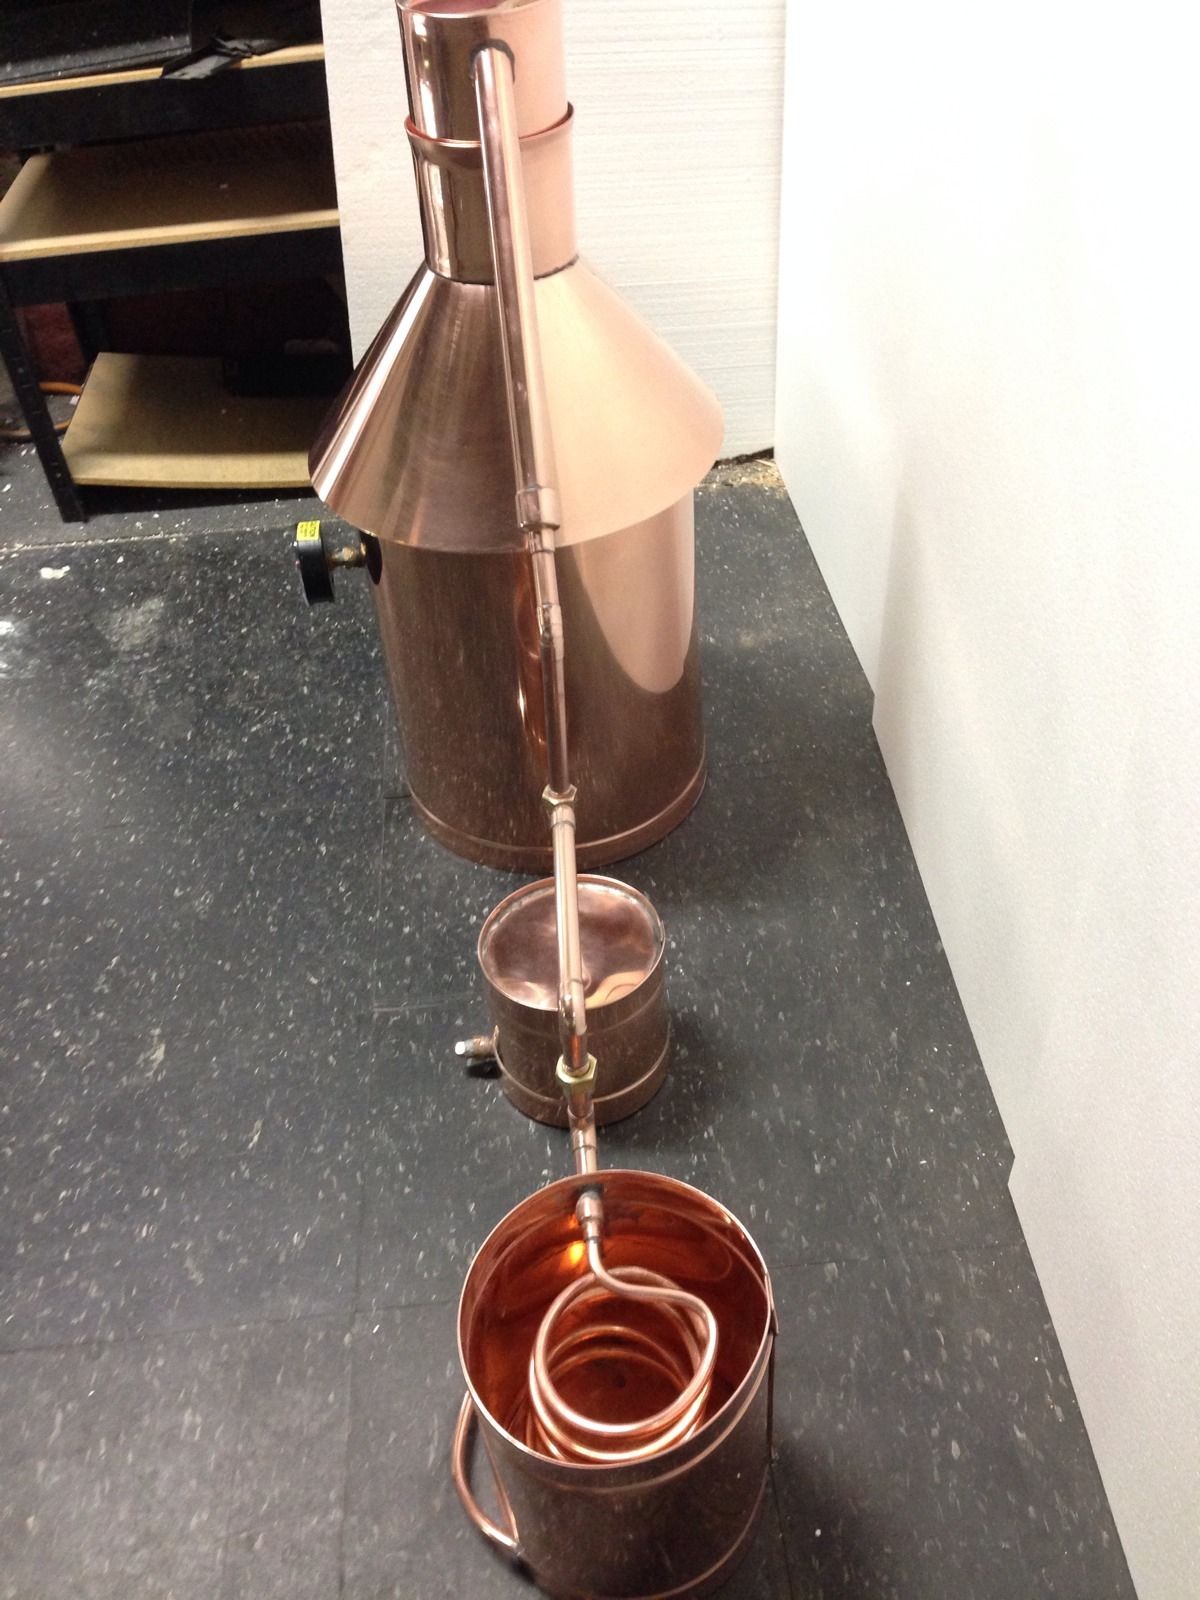 Discount 10 Gallon Stillz Traditional Copper - Moonshine Still